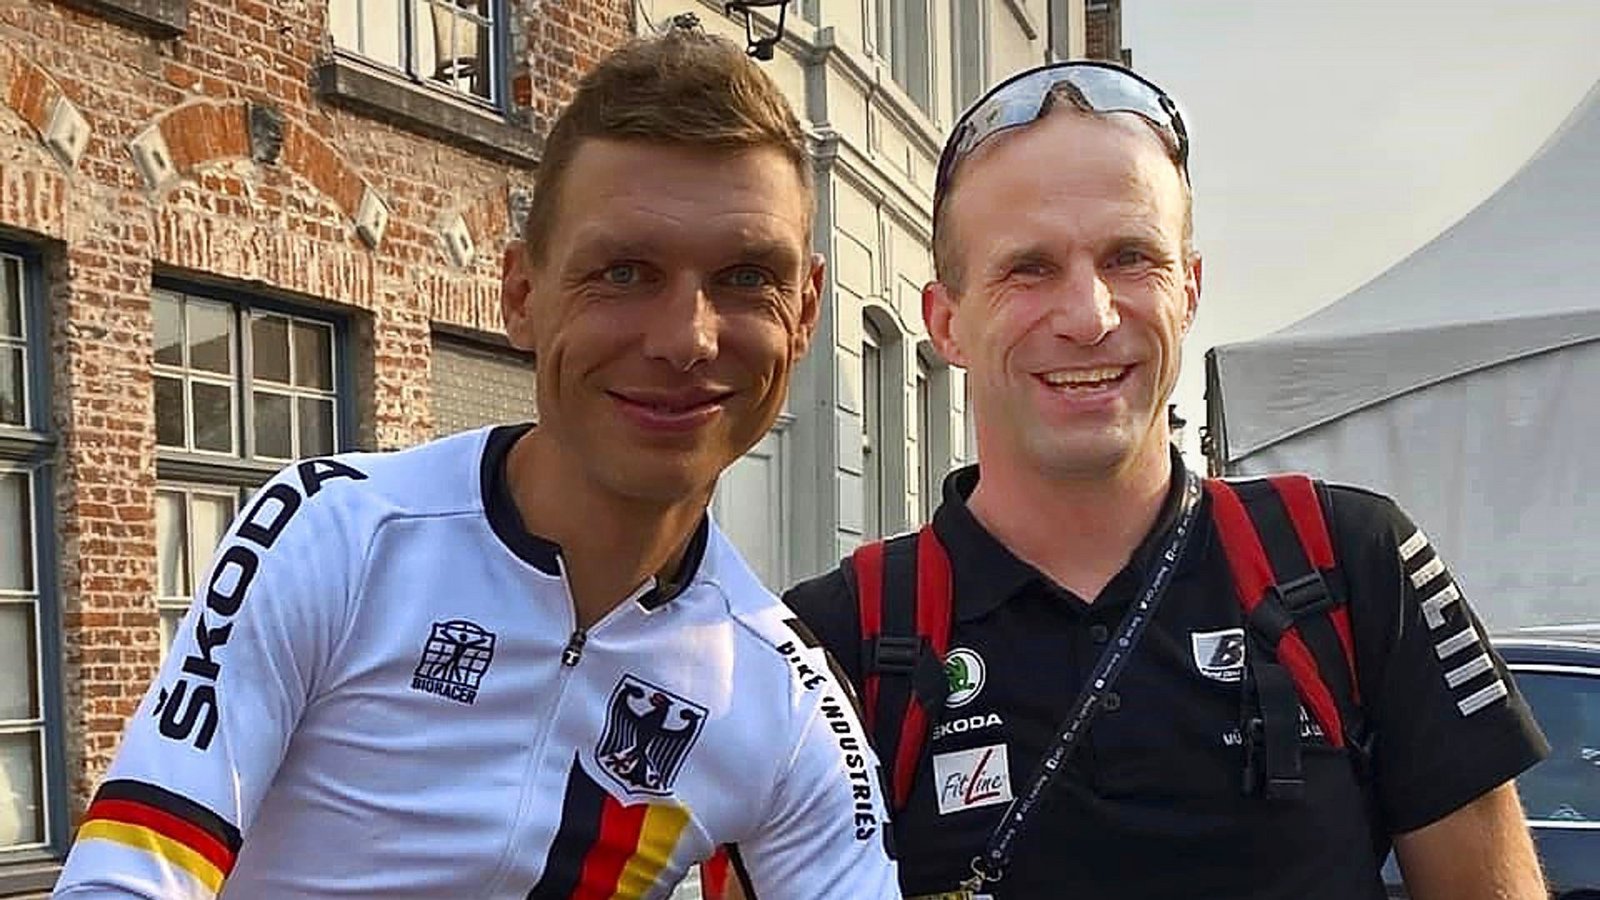 Verbandsarzt Matthias Baumann mit dem mehrmaligen Zeitfahr-Weltmeister Tony Martin.Foto: red